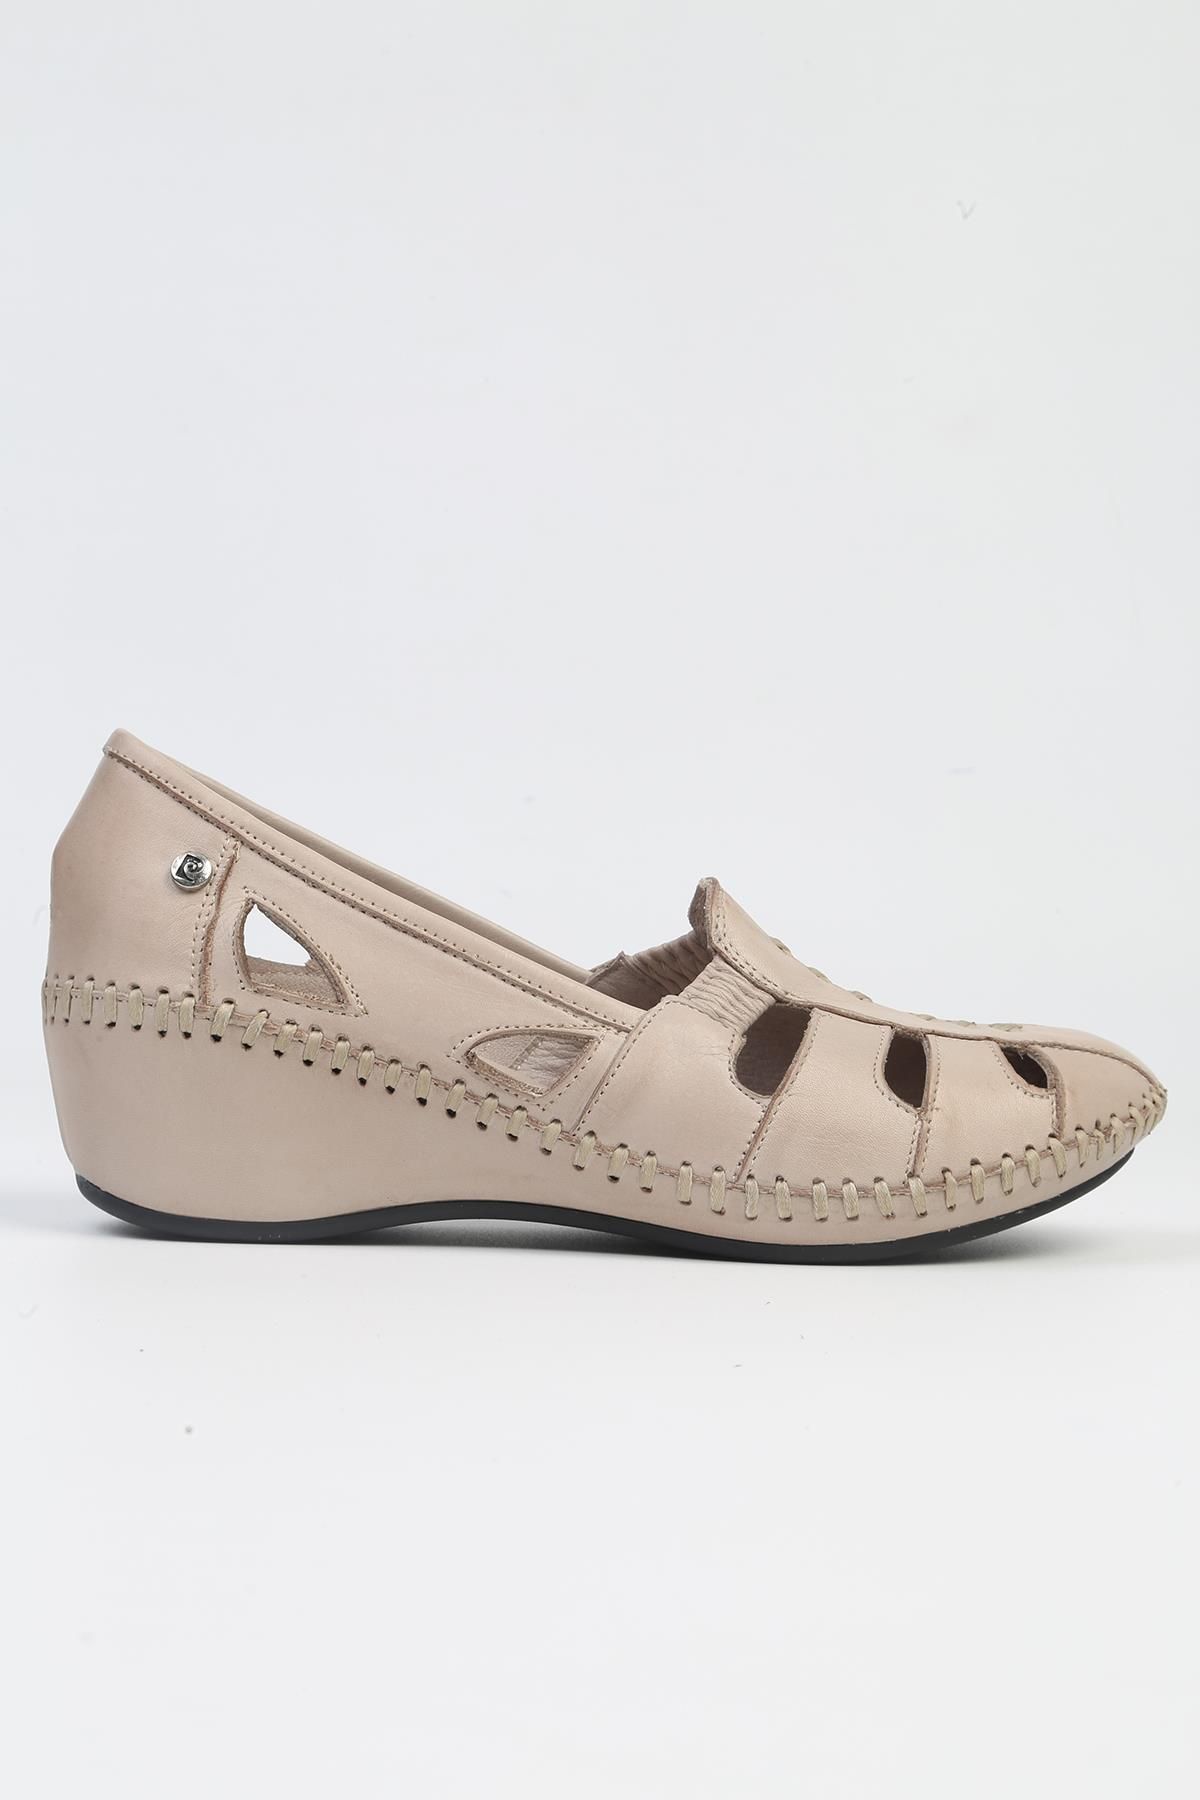 Pierre Cardin ® | PC-53023- 3963 Vizon-Kadın Topuklu Günlük Ayakkabı